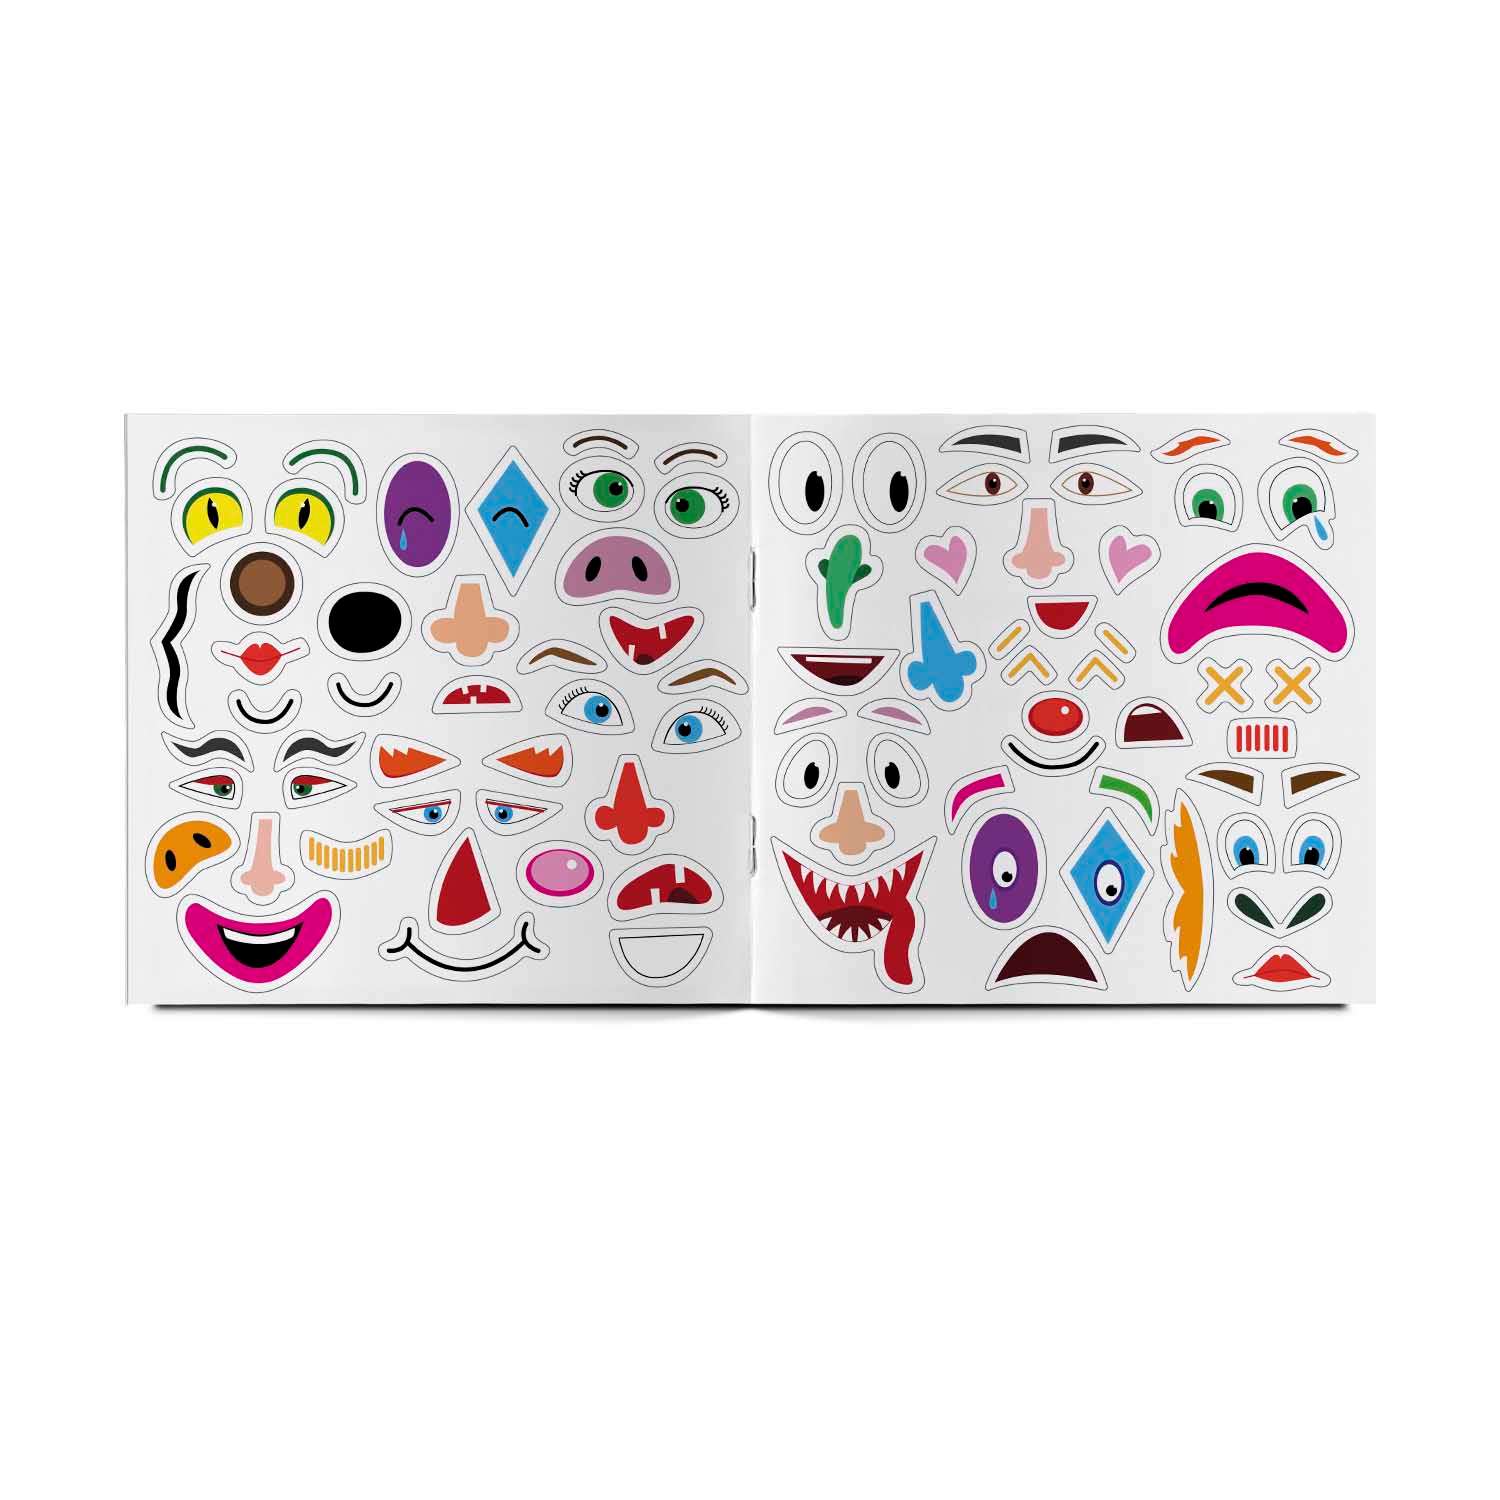 Альбом VoiceBook с многоразовыми наклейками Угадай настроение - фото 4